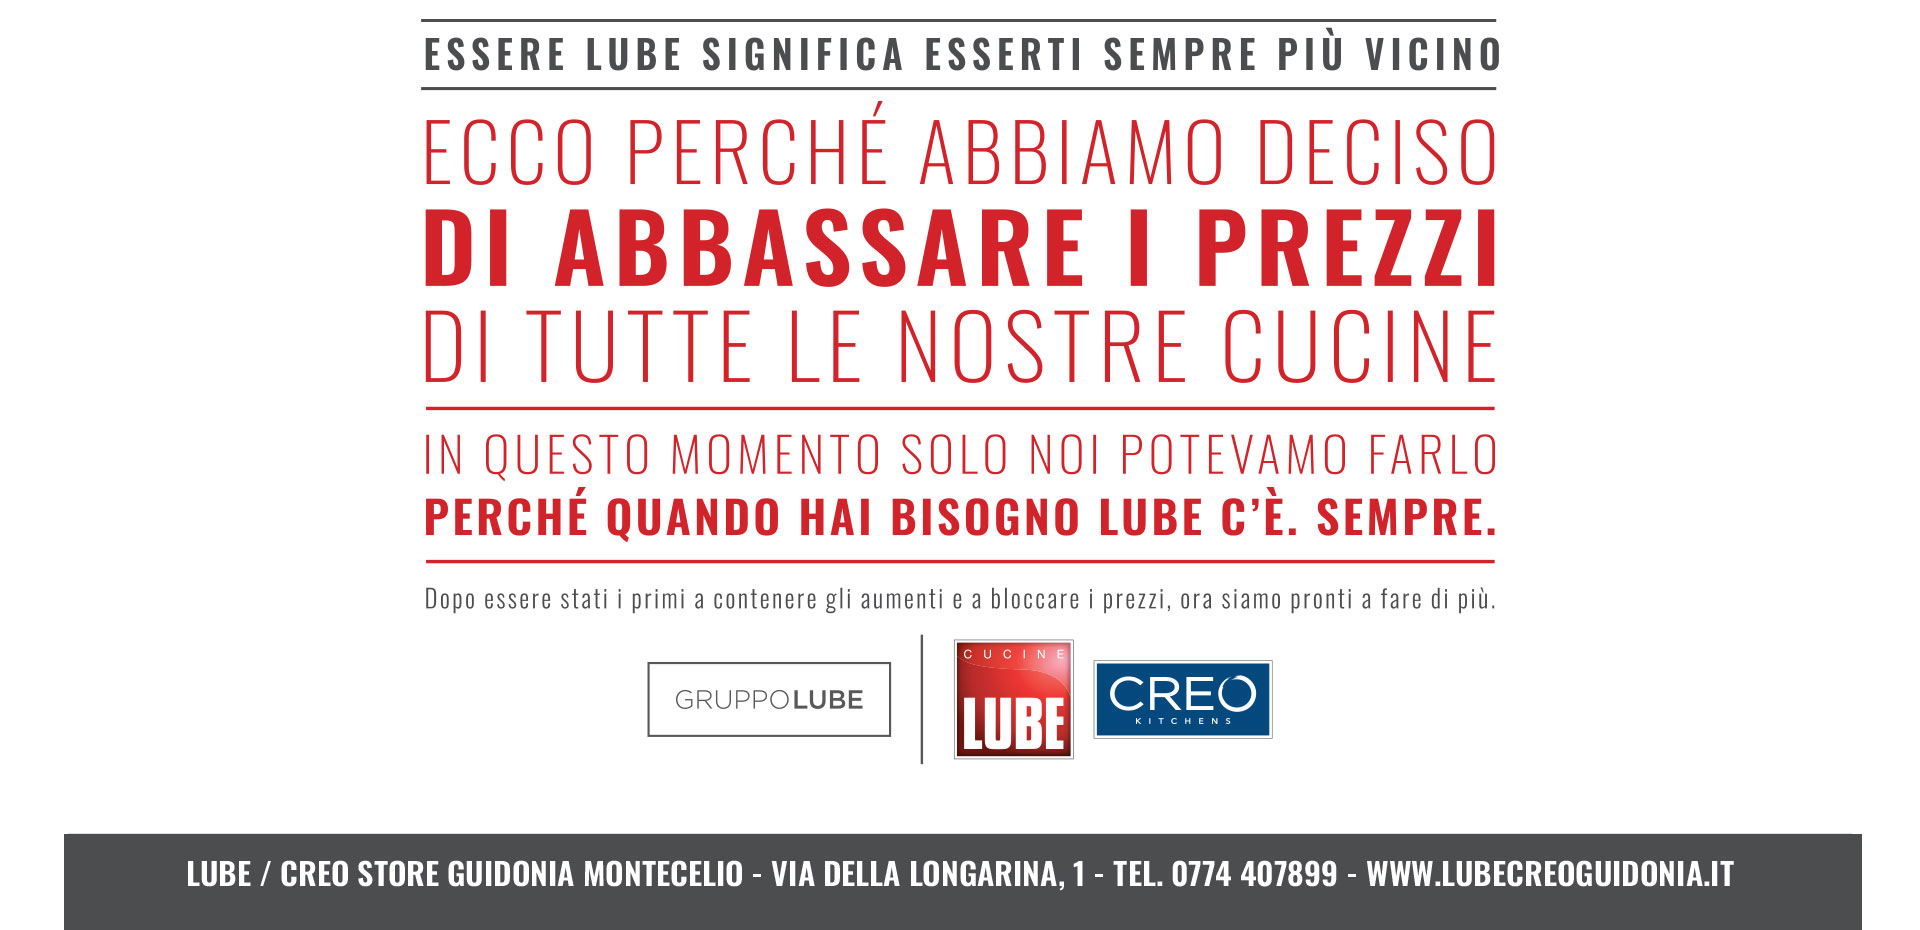 Abbiamo deciso di abbassare i prezzi! Approfitta della promozione Cucine LUBE e CREO Kitchens fino al 31 marzo! - LUBE CREO Store Guidonia (Roma)